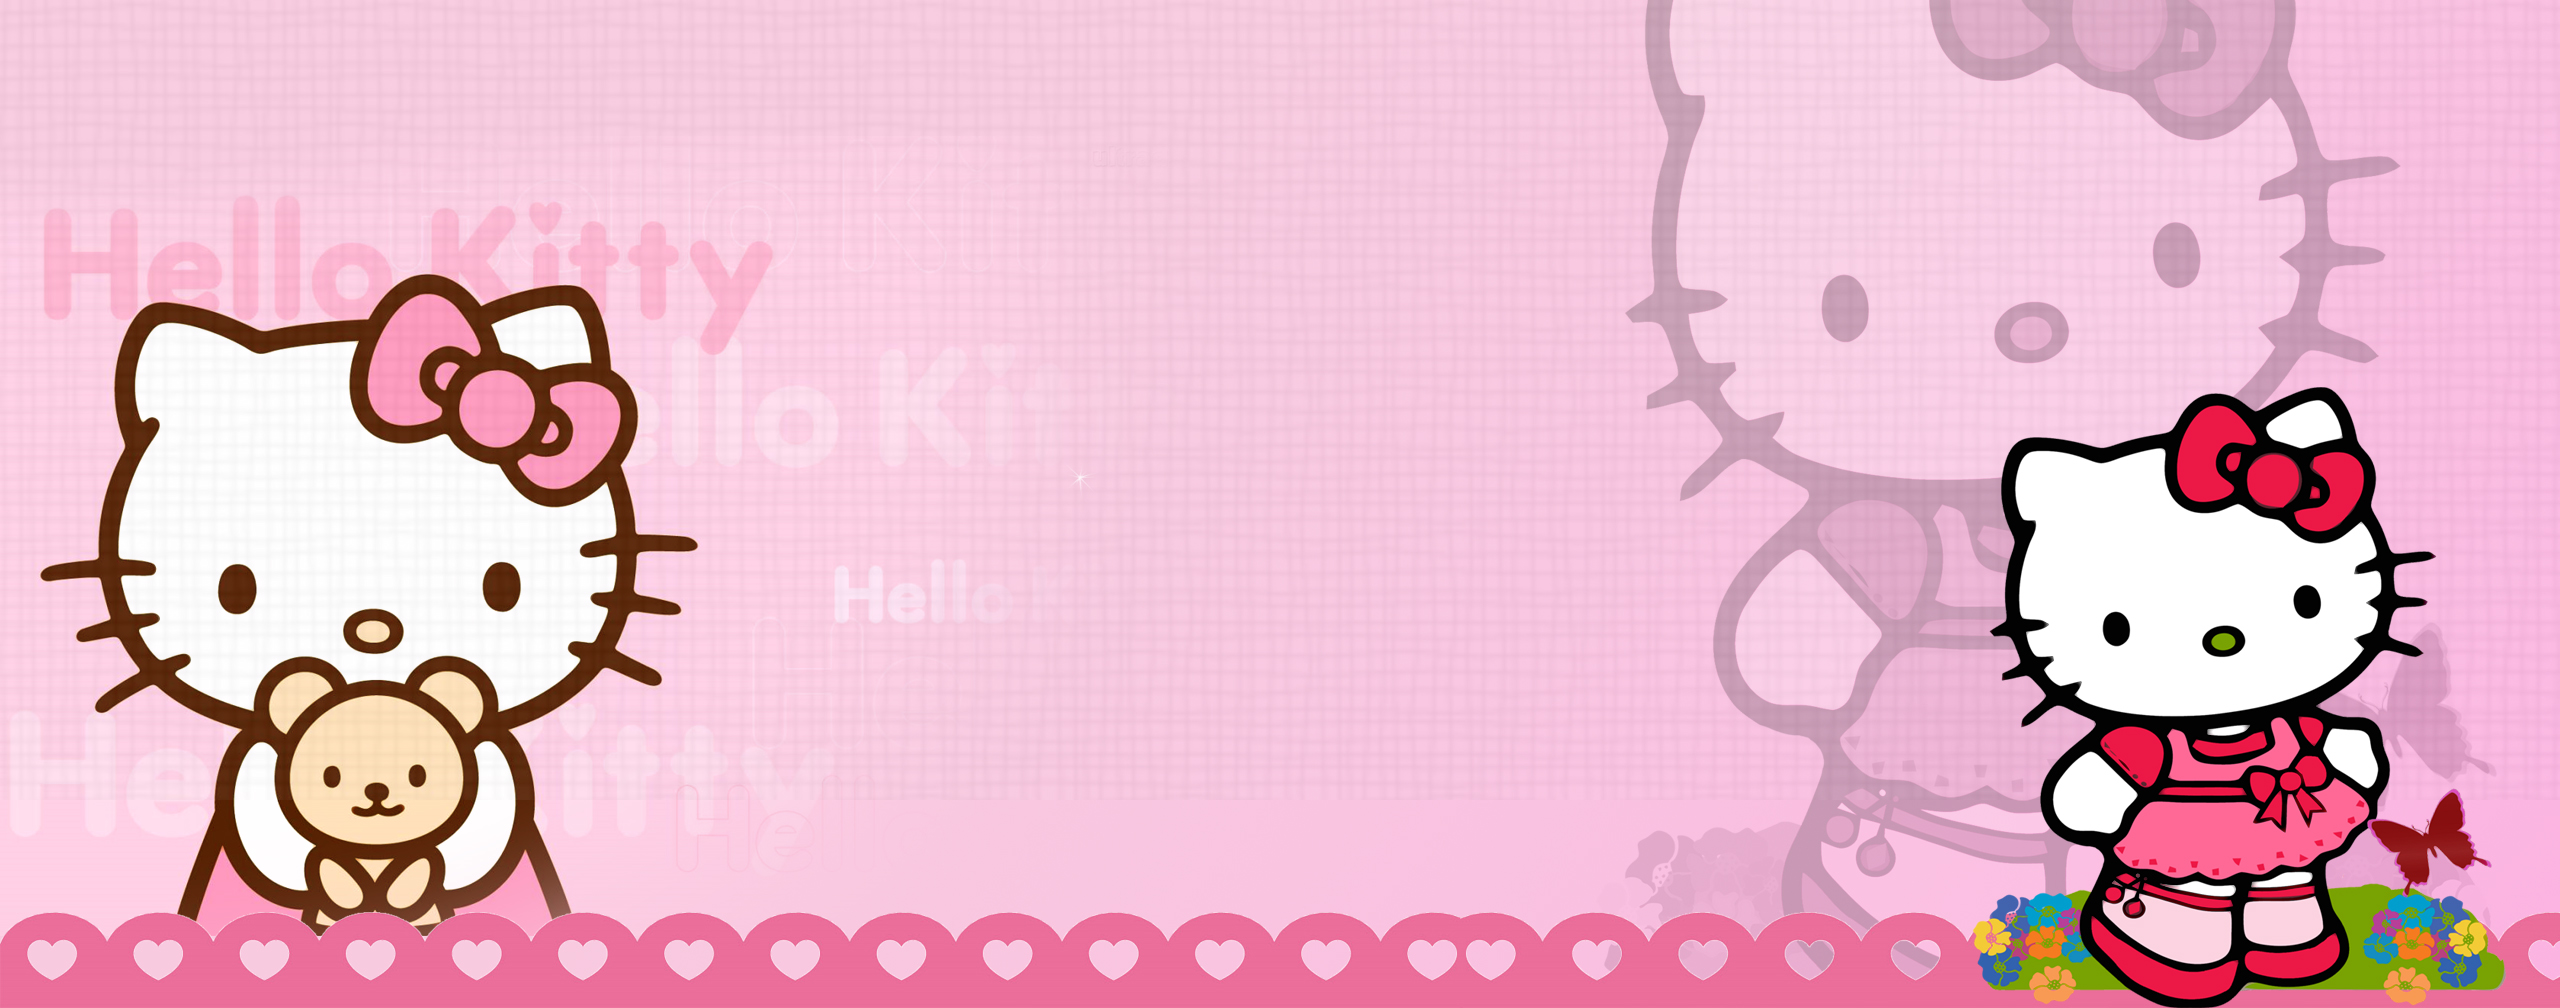 Hello Kitty wallpaper by vinithkumar on DeviantArt